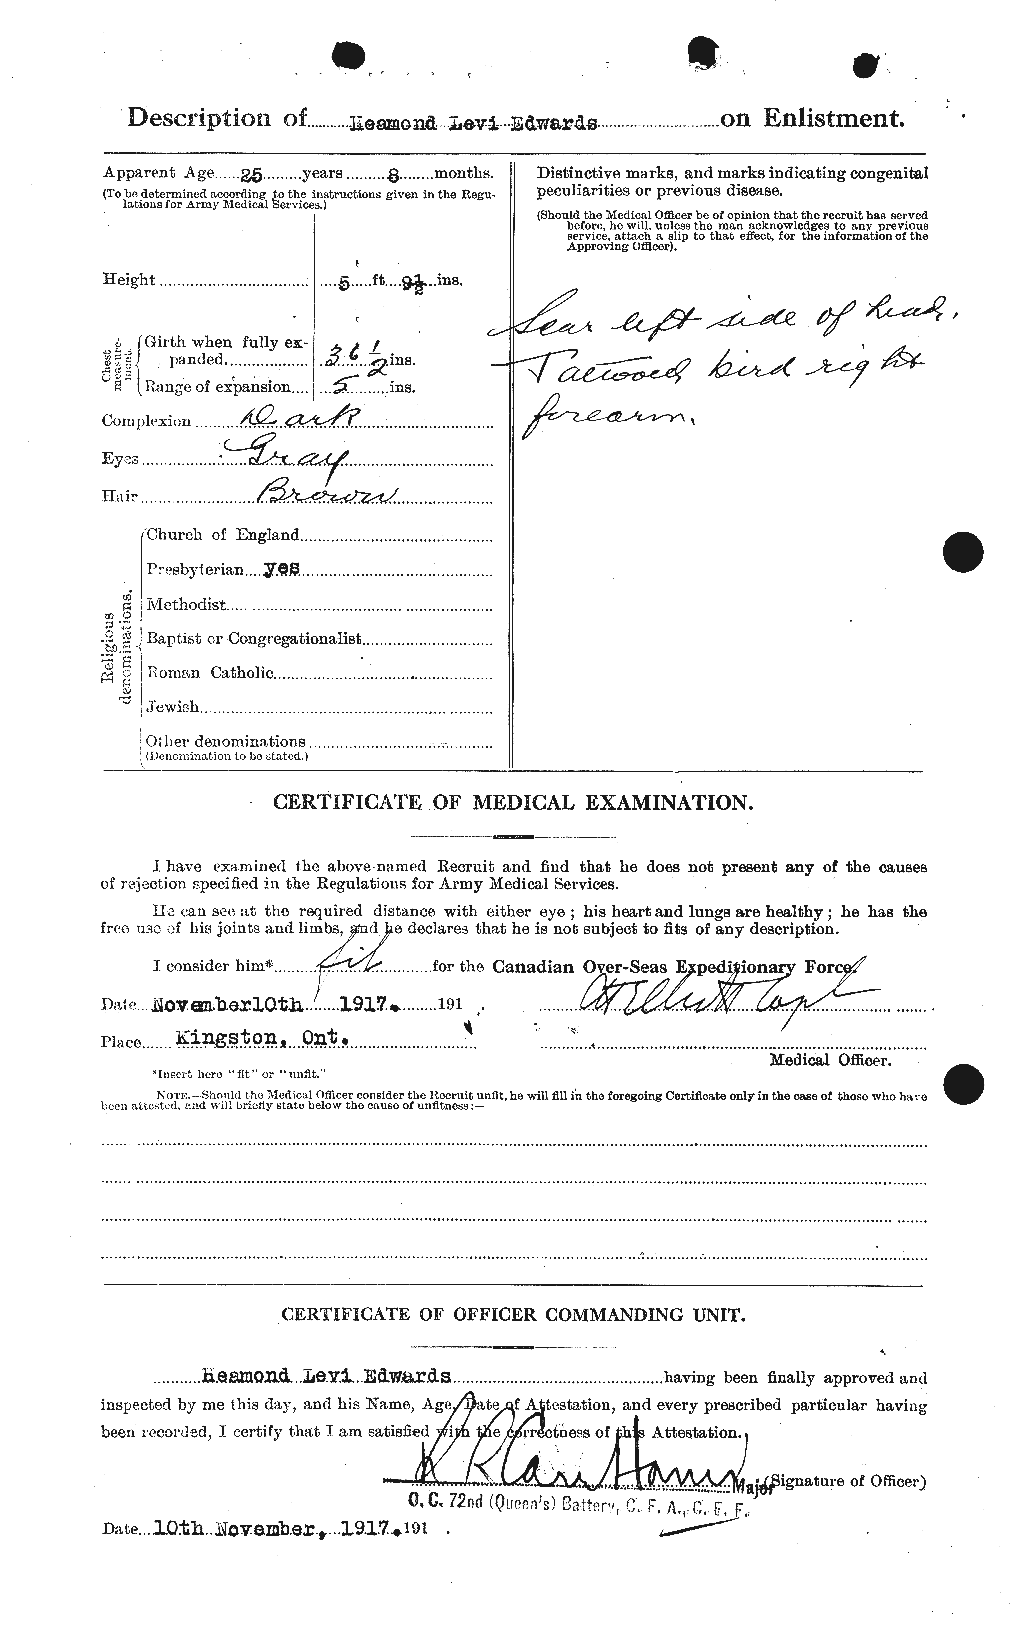 Dossiers du Personnel de la Première Guerre mondiale - CEC 309749b